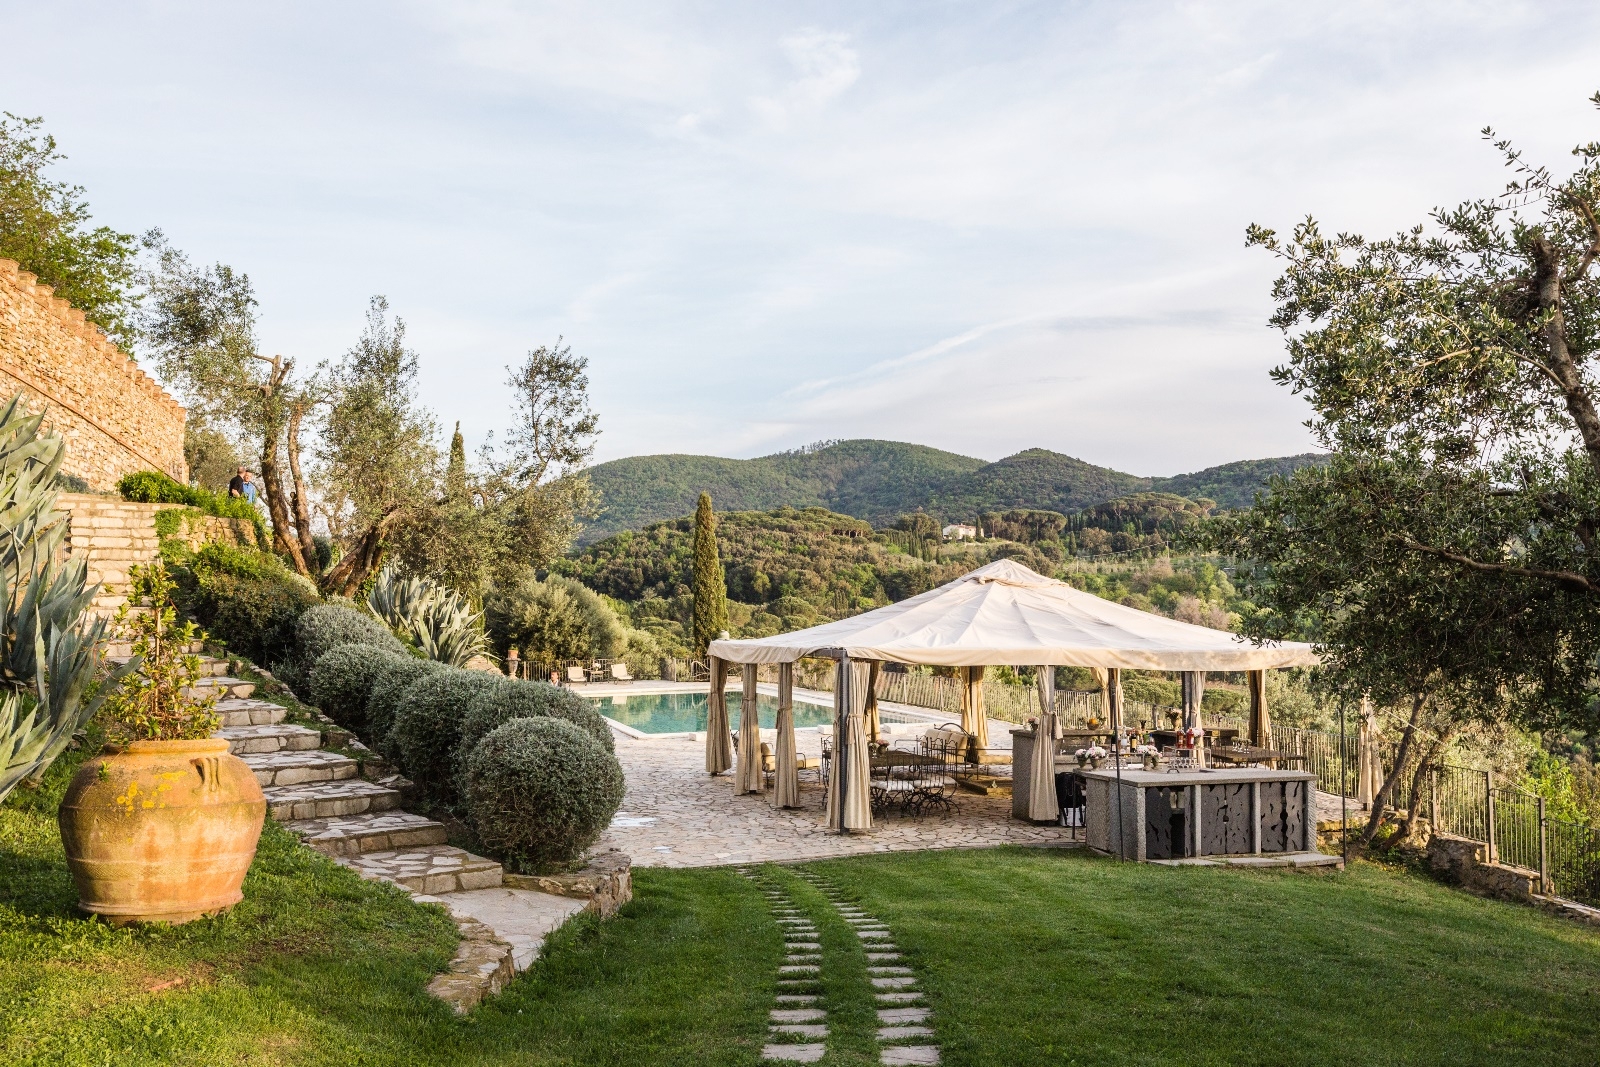 the pool tent and garden of Castello di Segalari, Tuscany